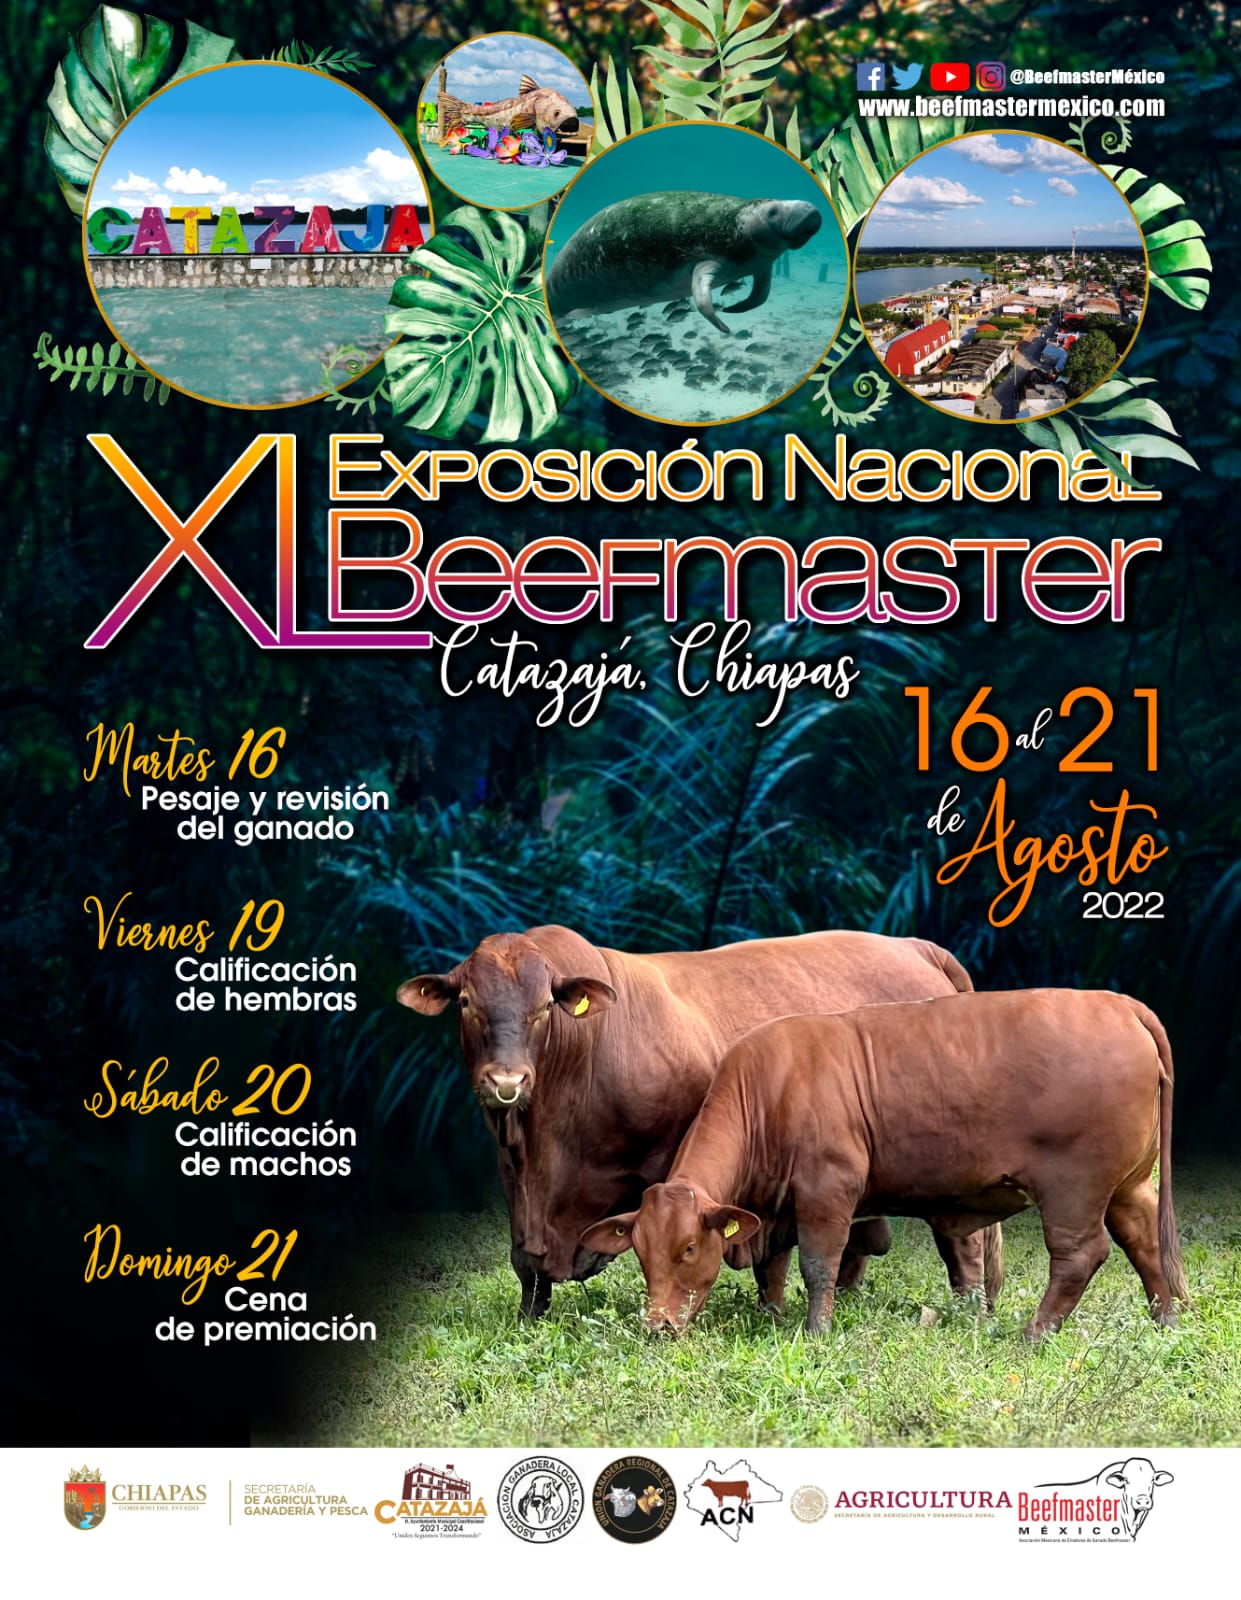 Exposición Nacional Beefmaster Catazaja Chiapas